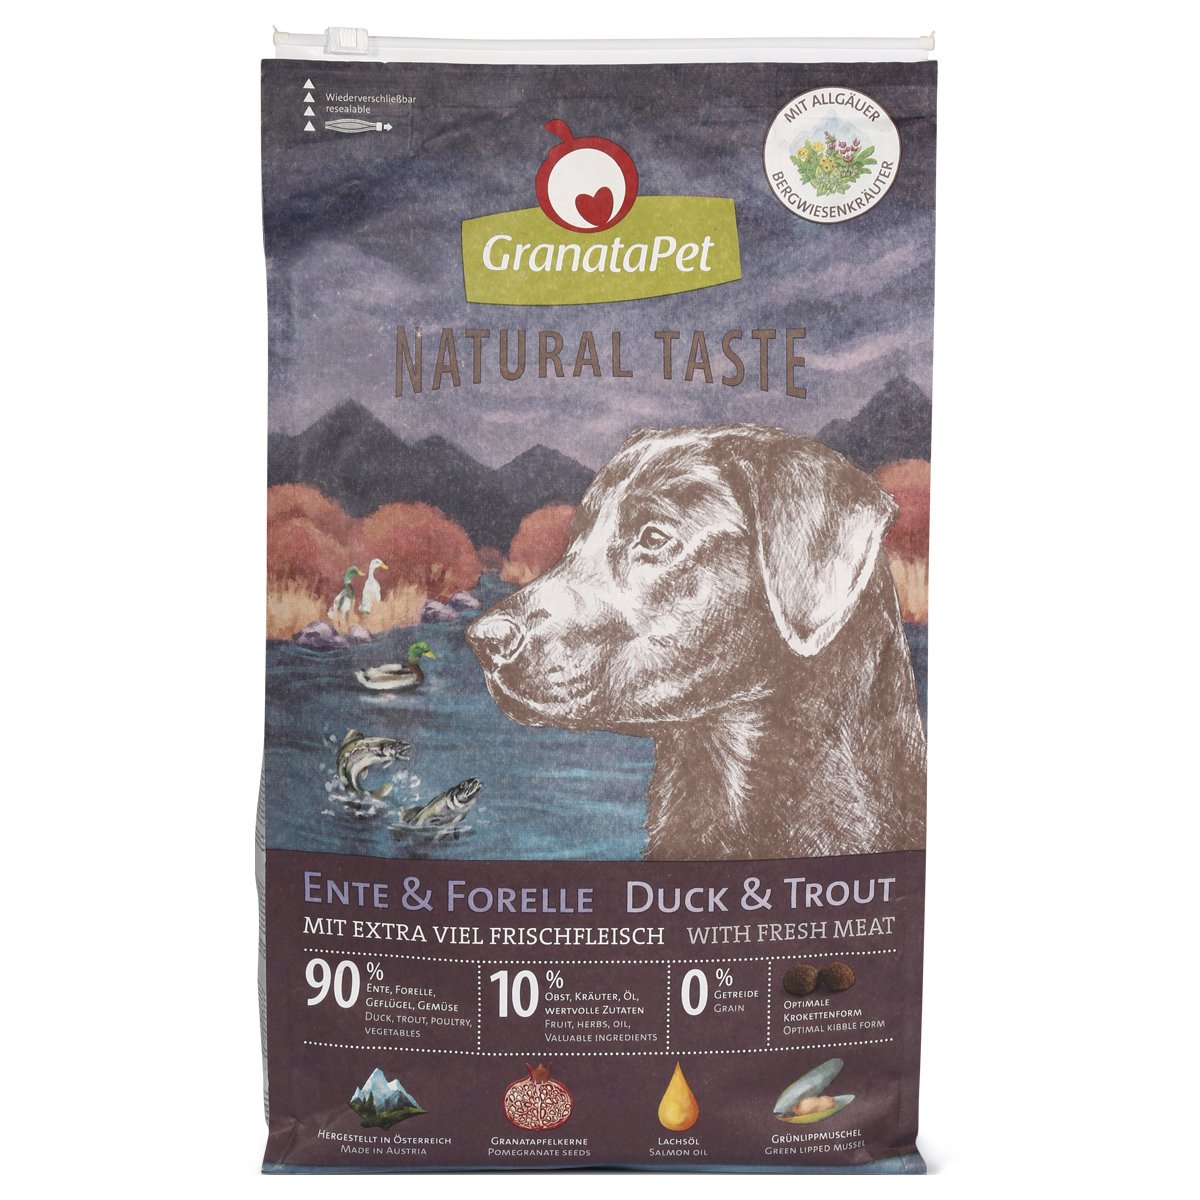 GranataPet Natural Taste Ente & Forelle 2x12kg